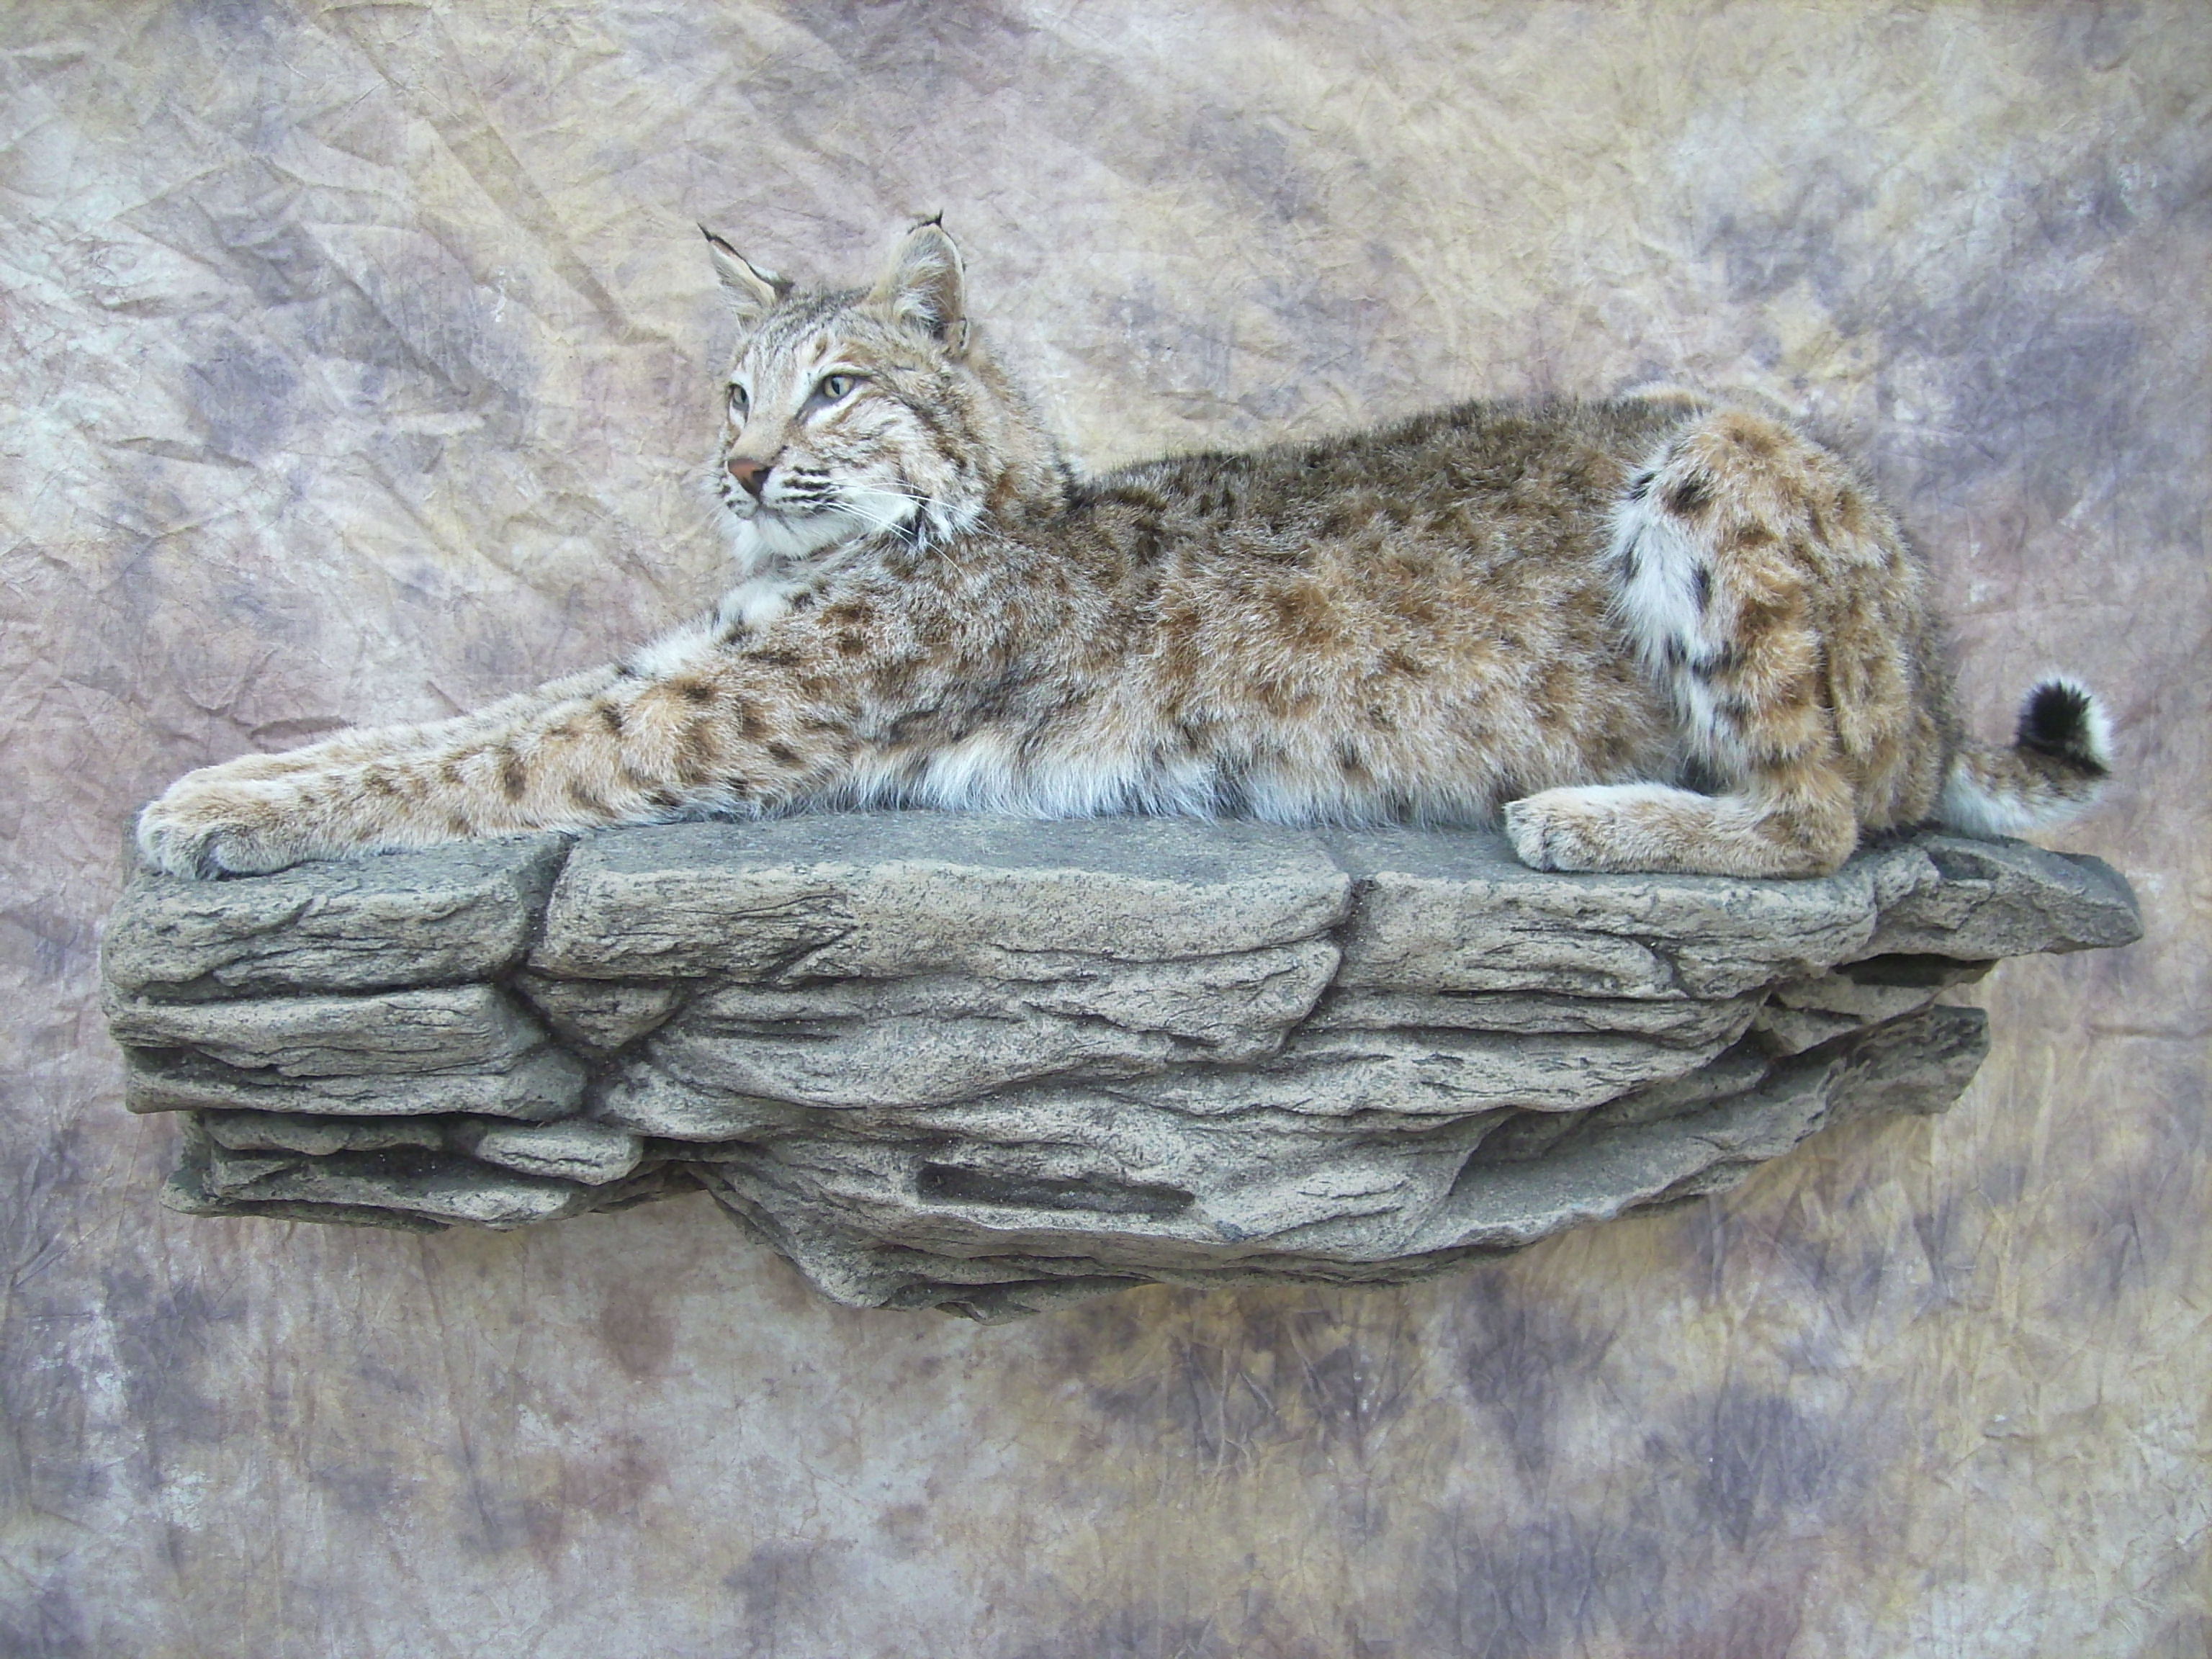 bobcat mount on a rock ledge